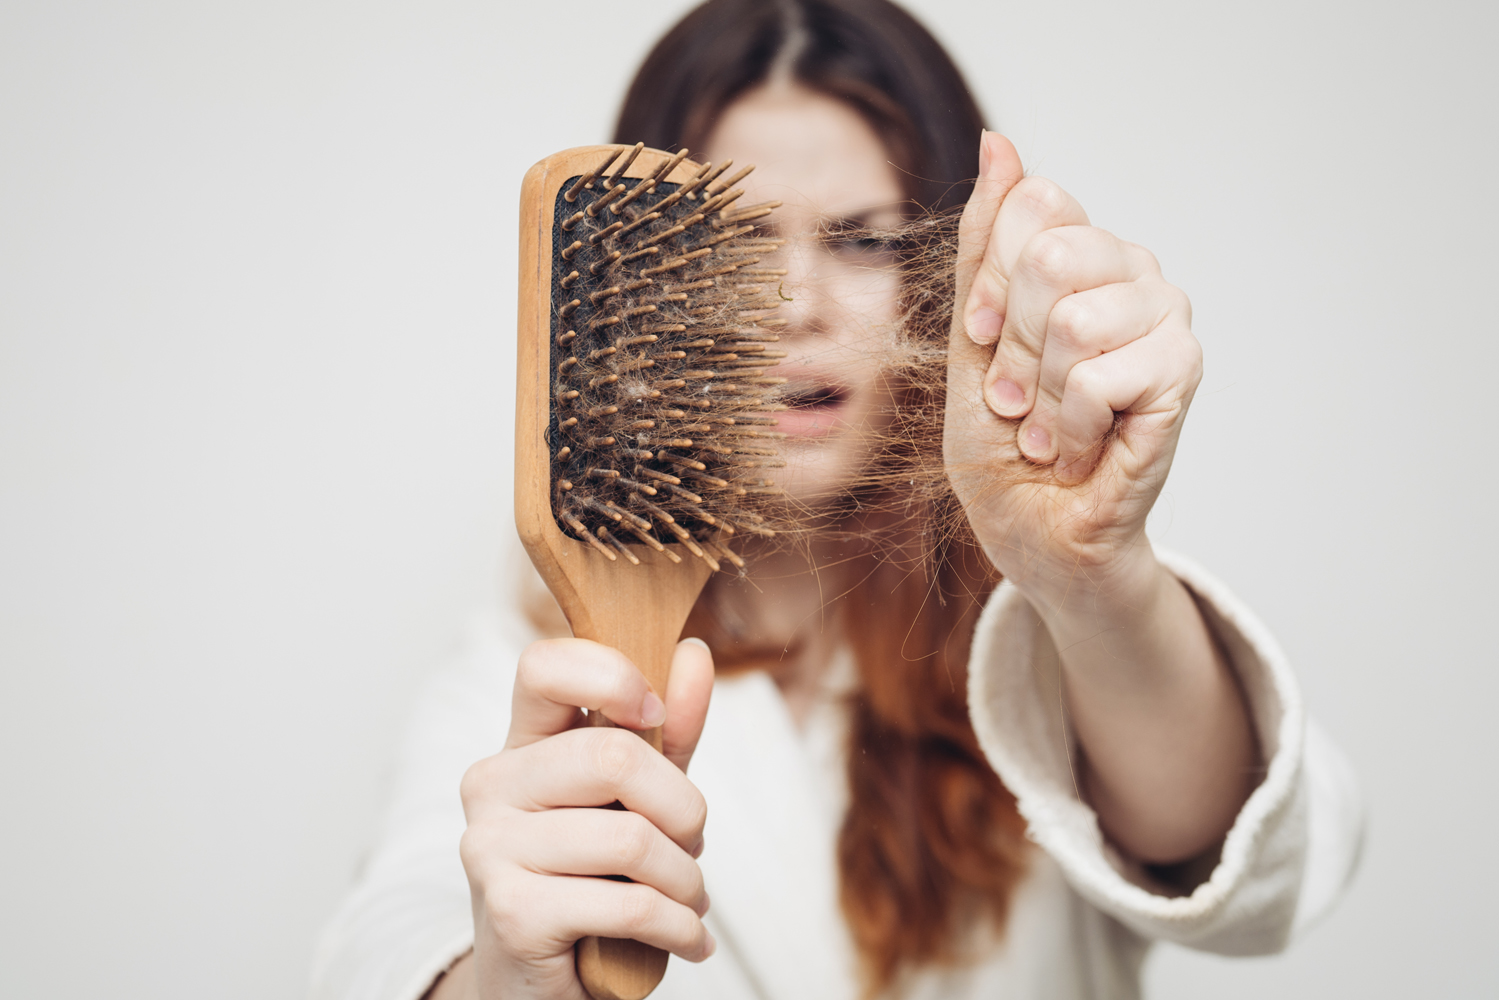 Как негры расчесывают волосы